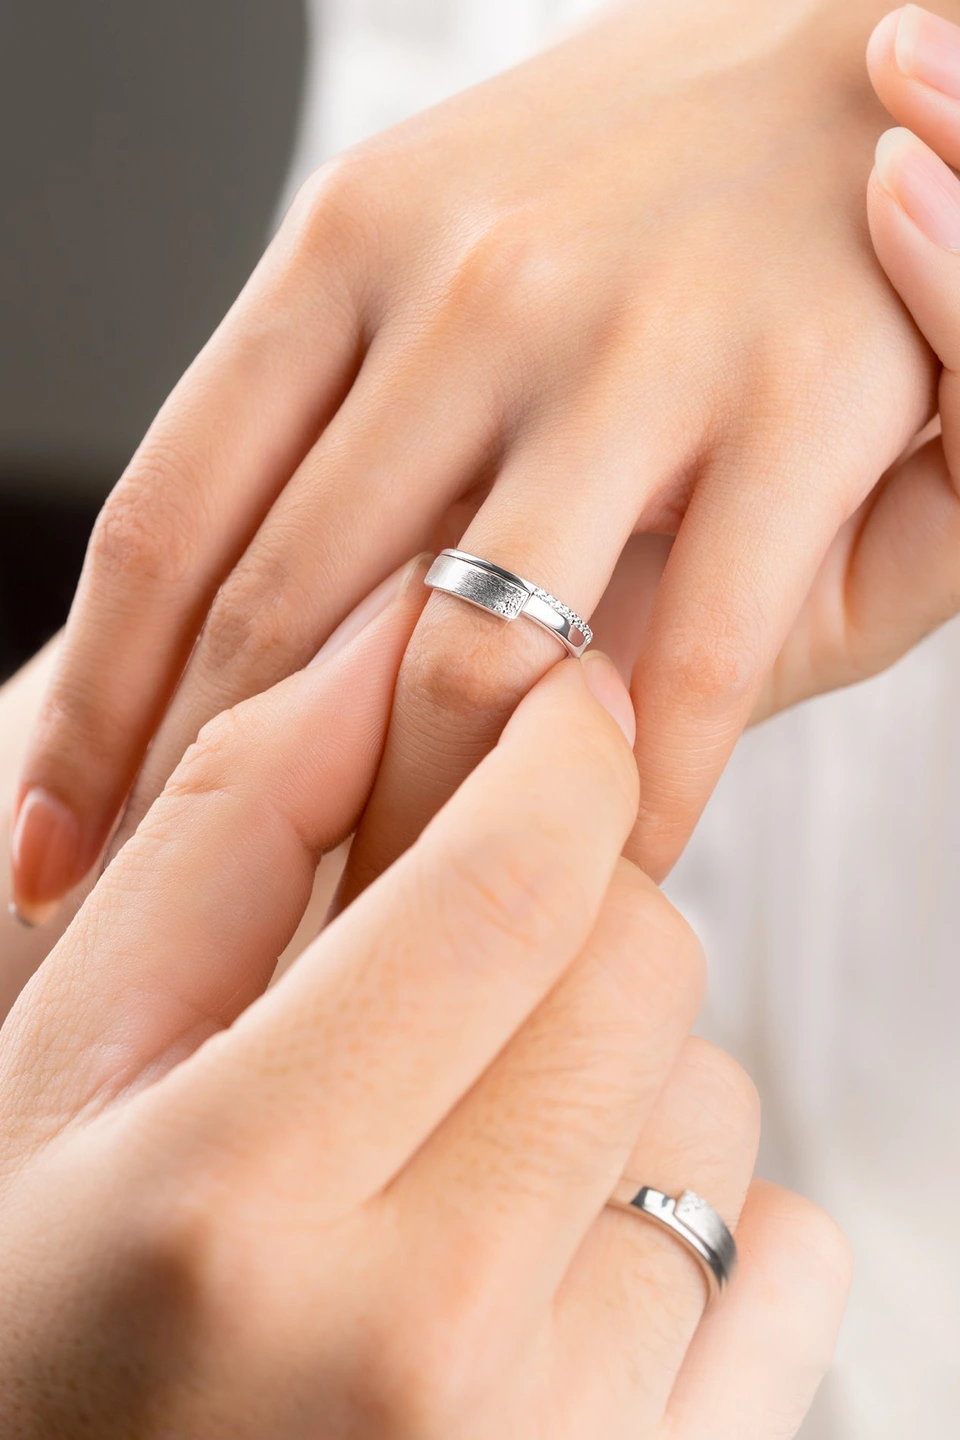 Những lợi ích khi đặt nhẫn cưới sớm